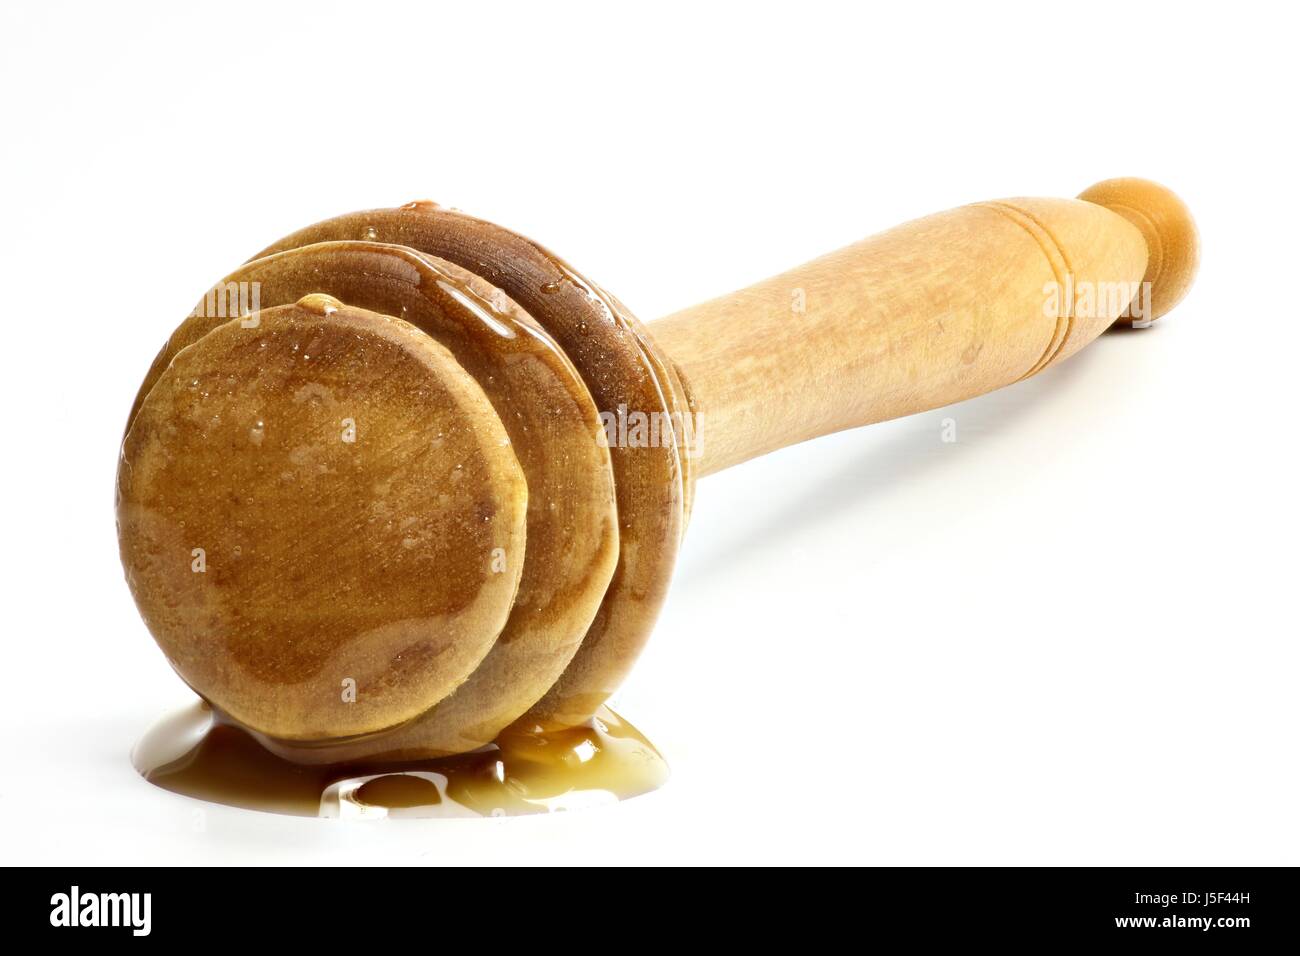 Honig-Löffel gemacht von Olivenholz isoliert auf weißem Hintergrund Stockfoto